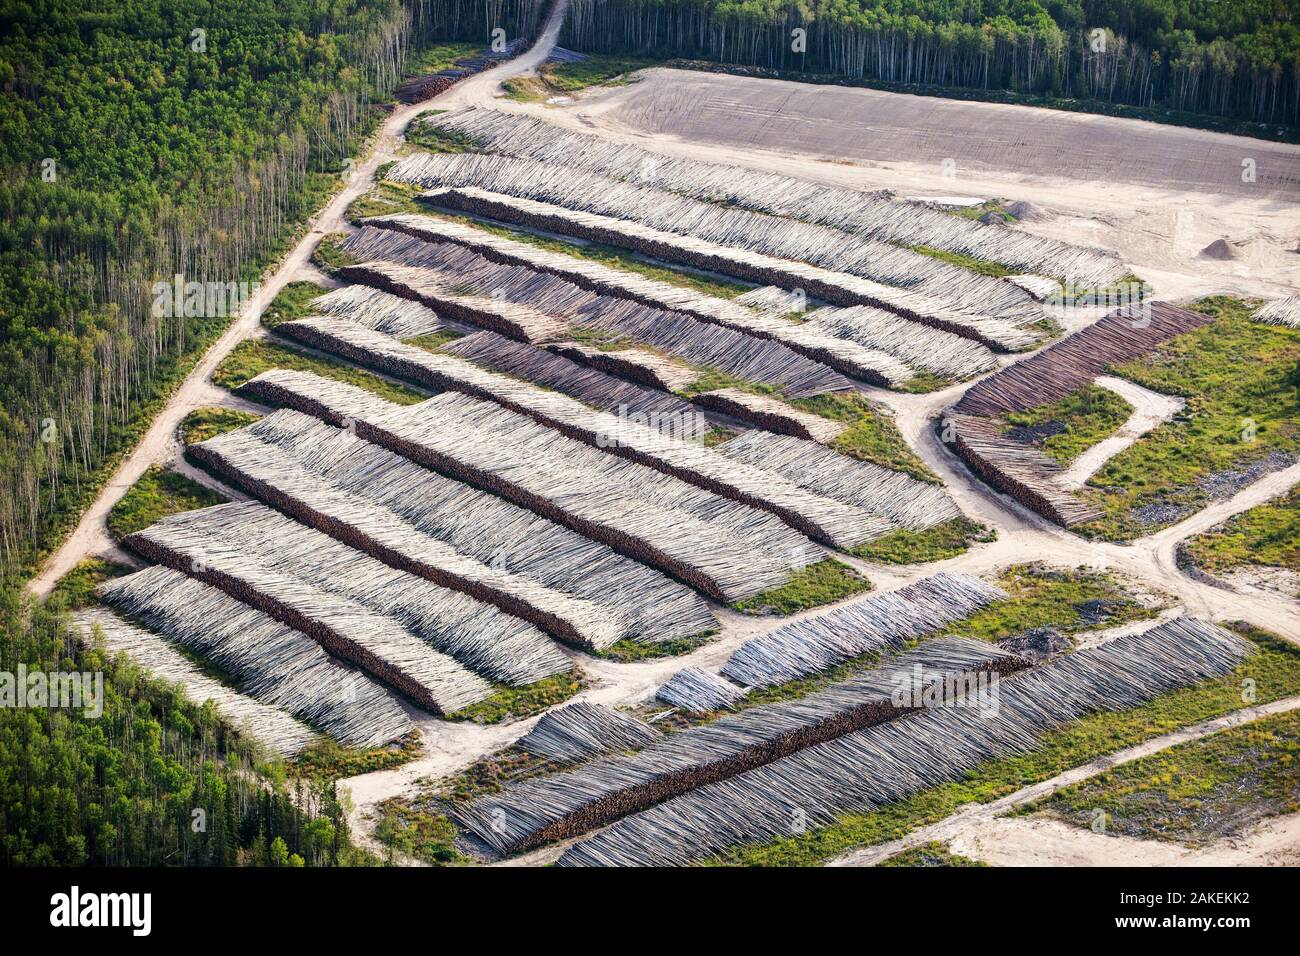 Borealer Wald gefällten Bäume klar zu machen für einen neuen tar sands Mine nördlich von Fort McMurray, Alberta, Kanada. August 2012 Stockfoto